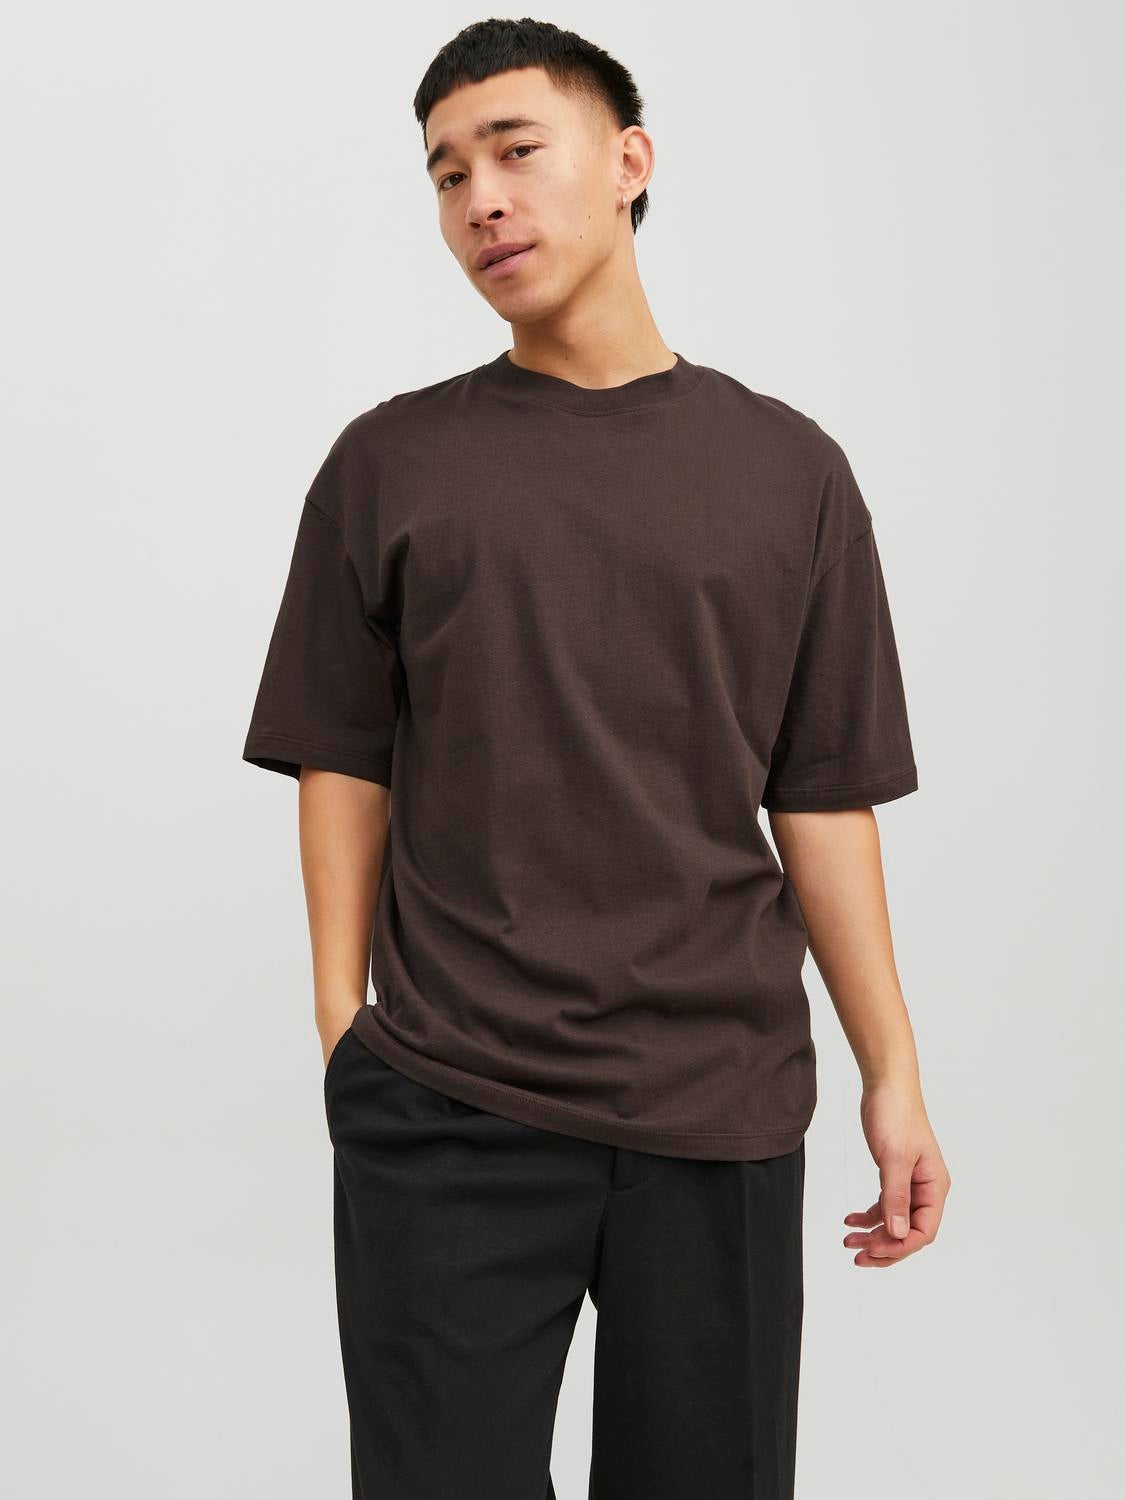 Plain T-shirts for Men: Black, White & More | JACK & JONES